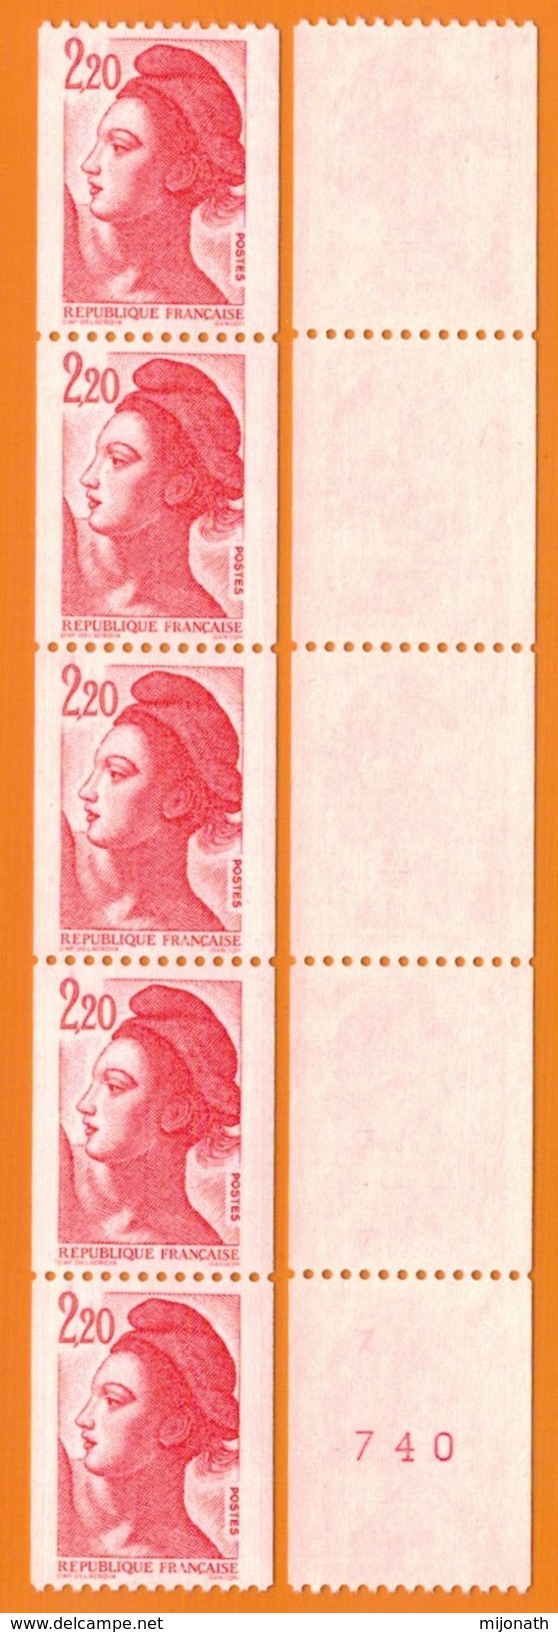 Ph-France-Bande De 5 Timbres-1985 - N° 2379 Et 2379b, Neuf ** Provenant De Roulettes N°87. - Coil Stamps